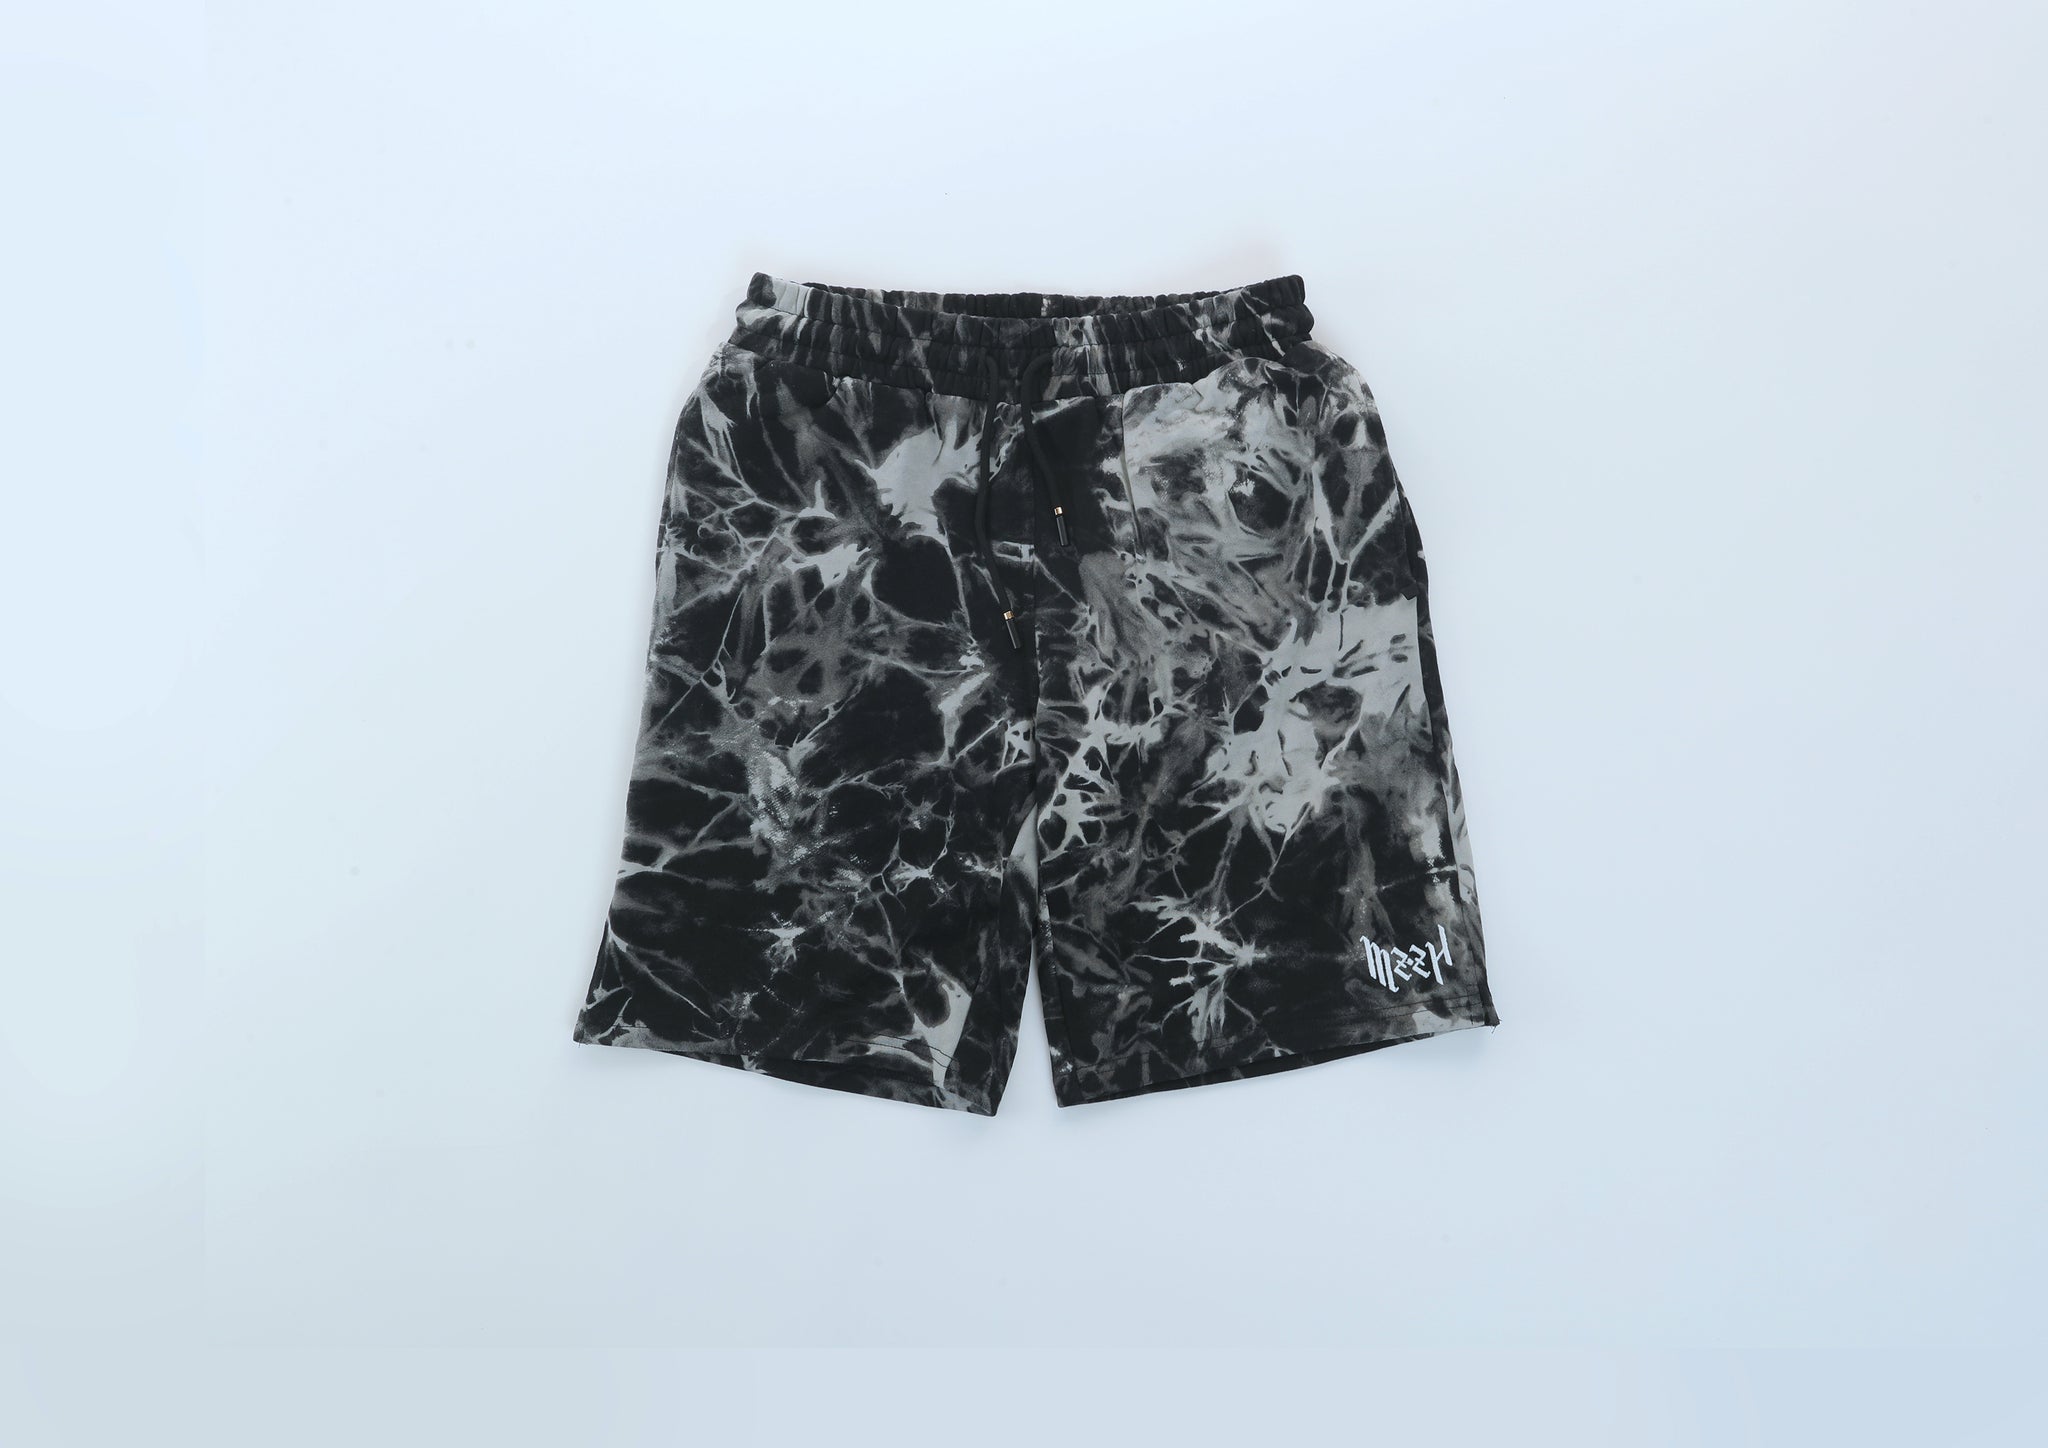 Market Smiley Shibori Dye Shorts Tie-Dye BLACK. M / Black